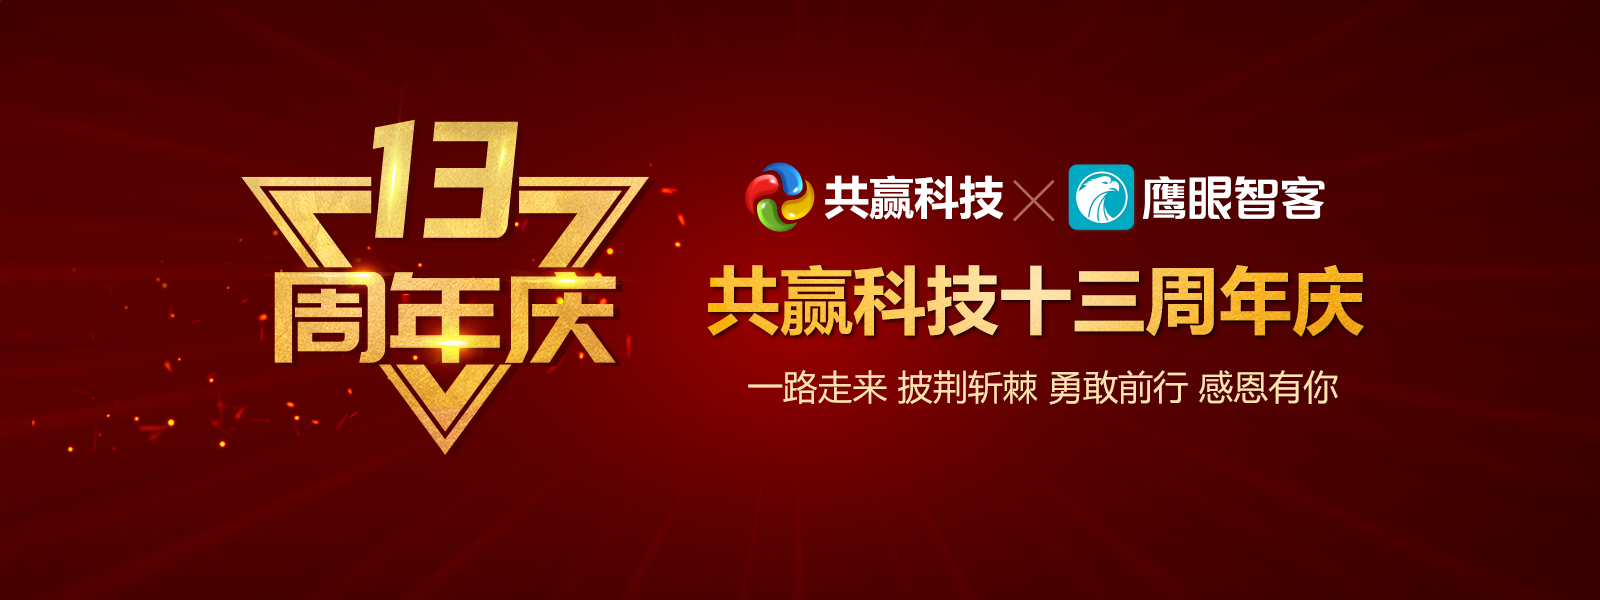 热烈祝贺郑州共赢科技有限公司成立十三周年！